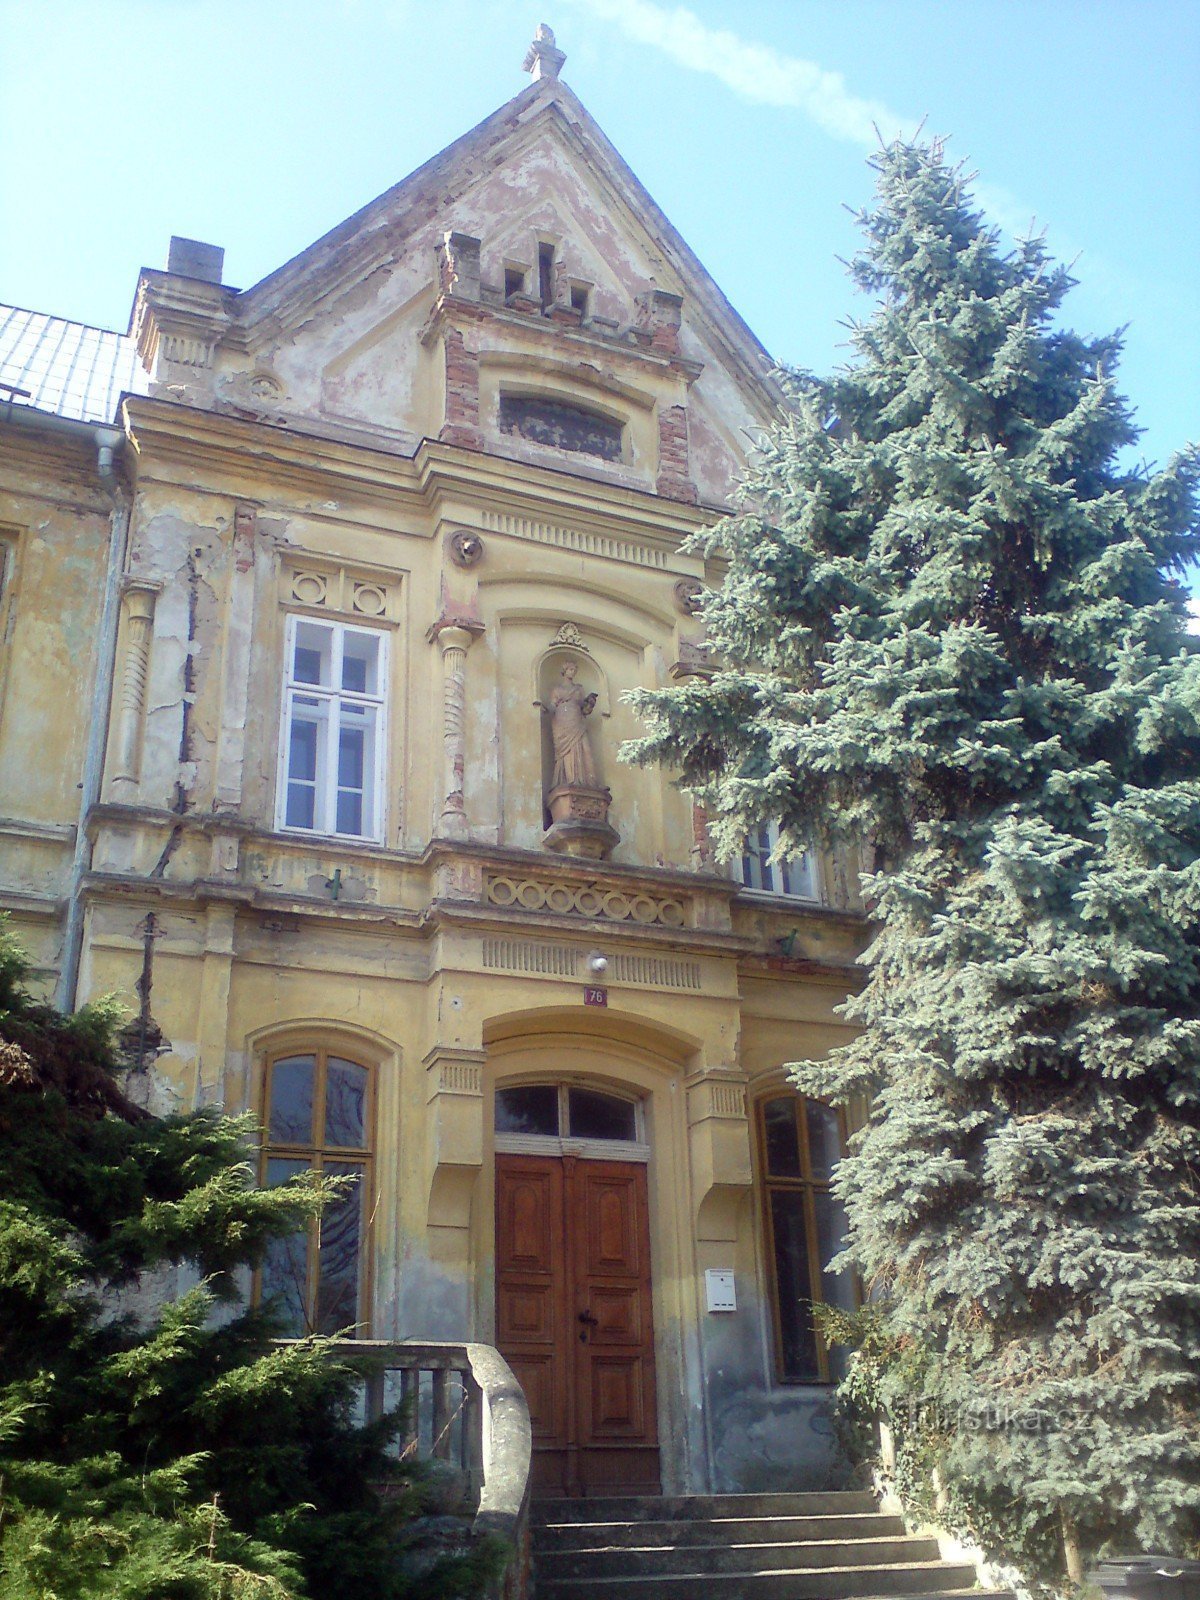 framsidan och huvudentrén till skolbyggnaden - en silvergran till höger pryder trappan, nej